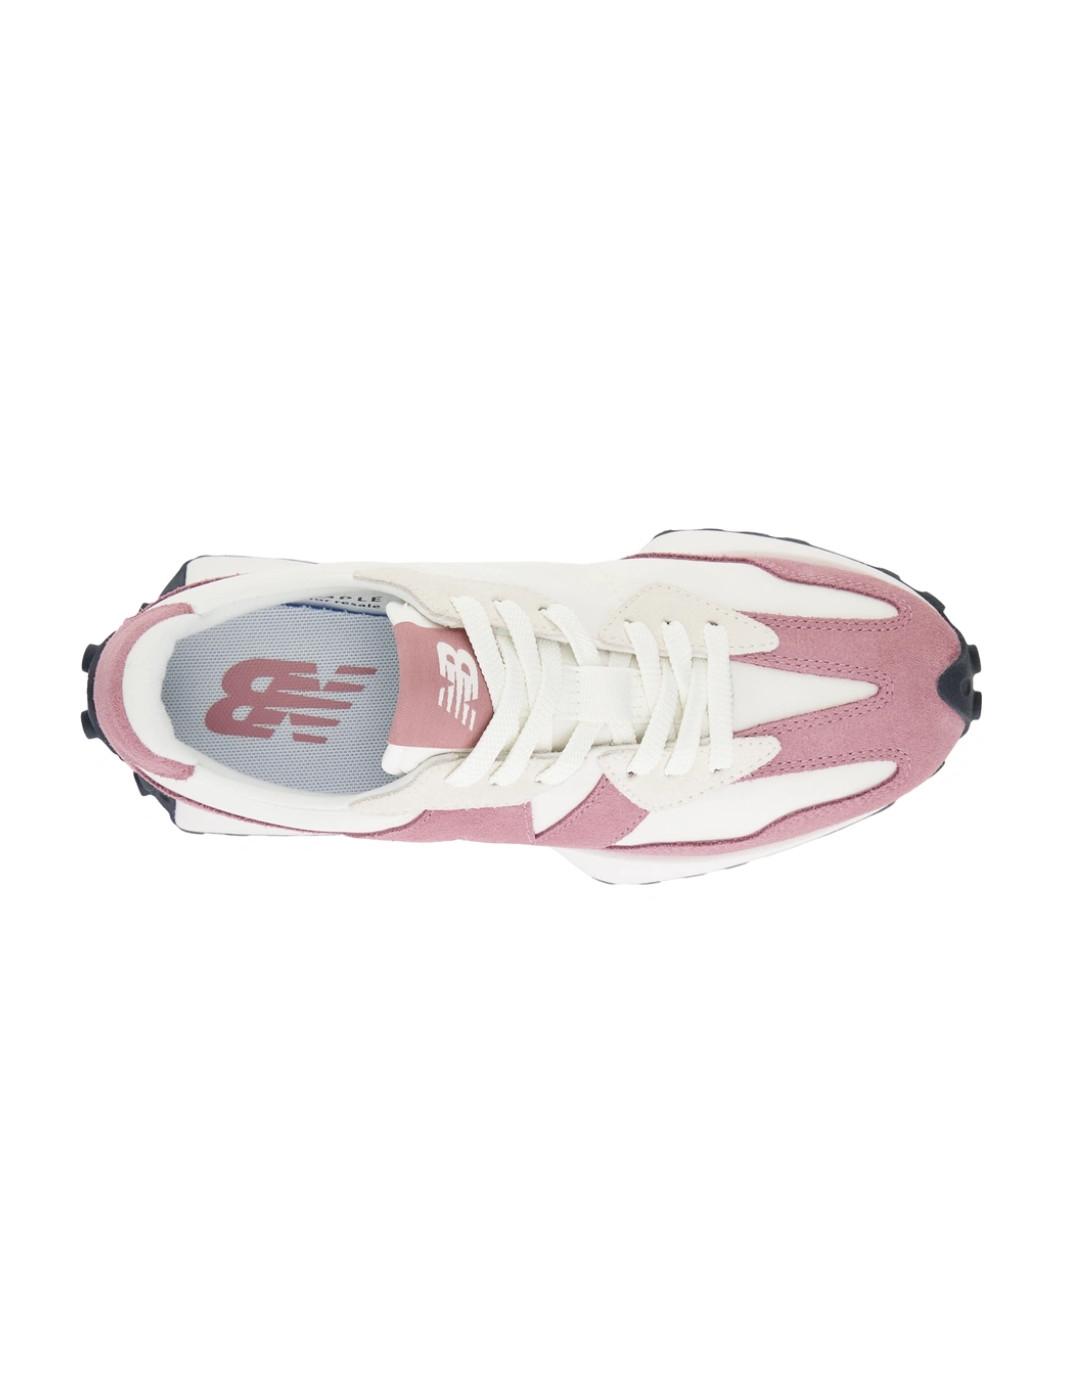 Zapatillas New Balance WS327MB rosa y blanco para mujer